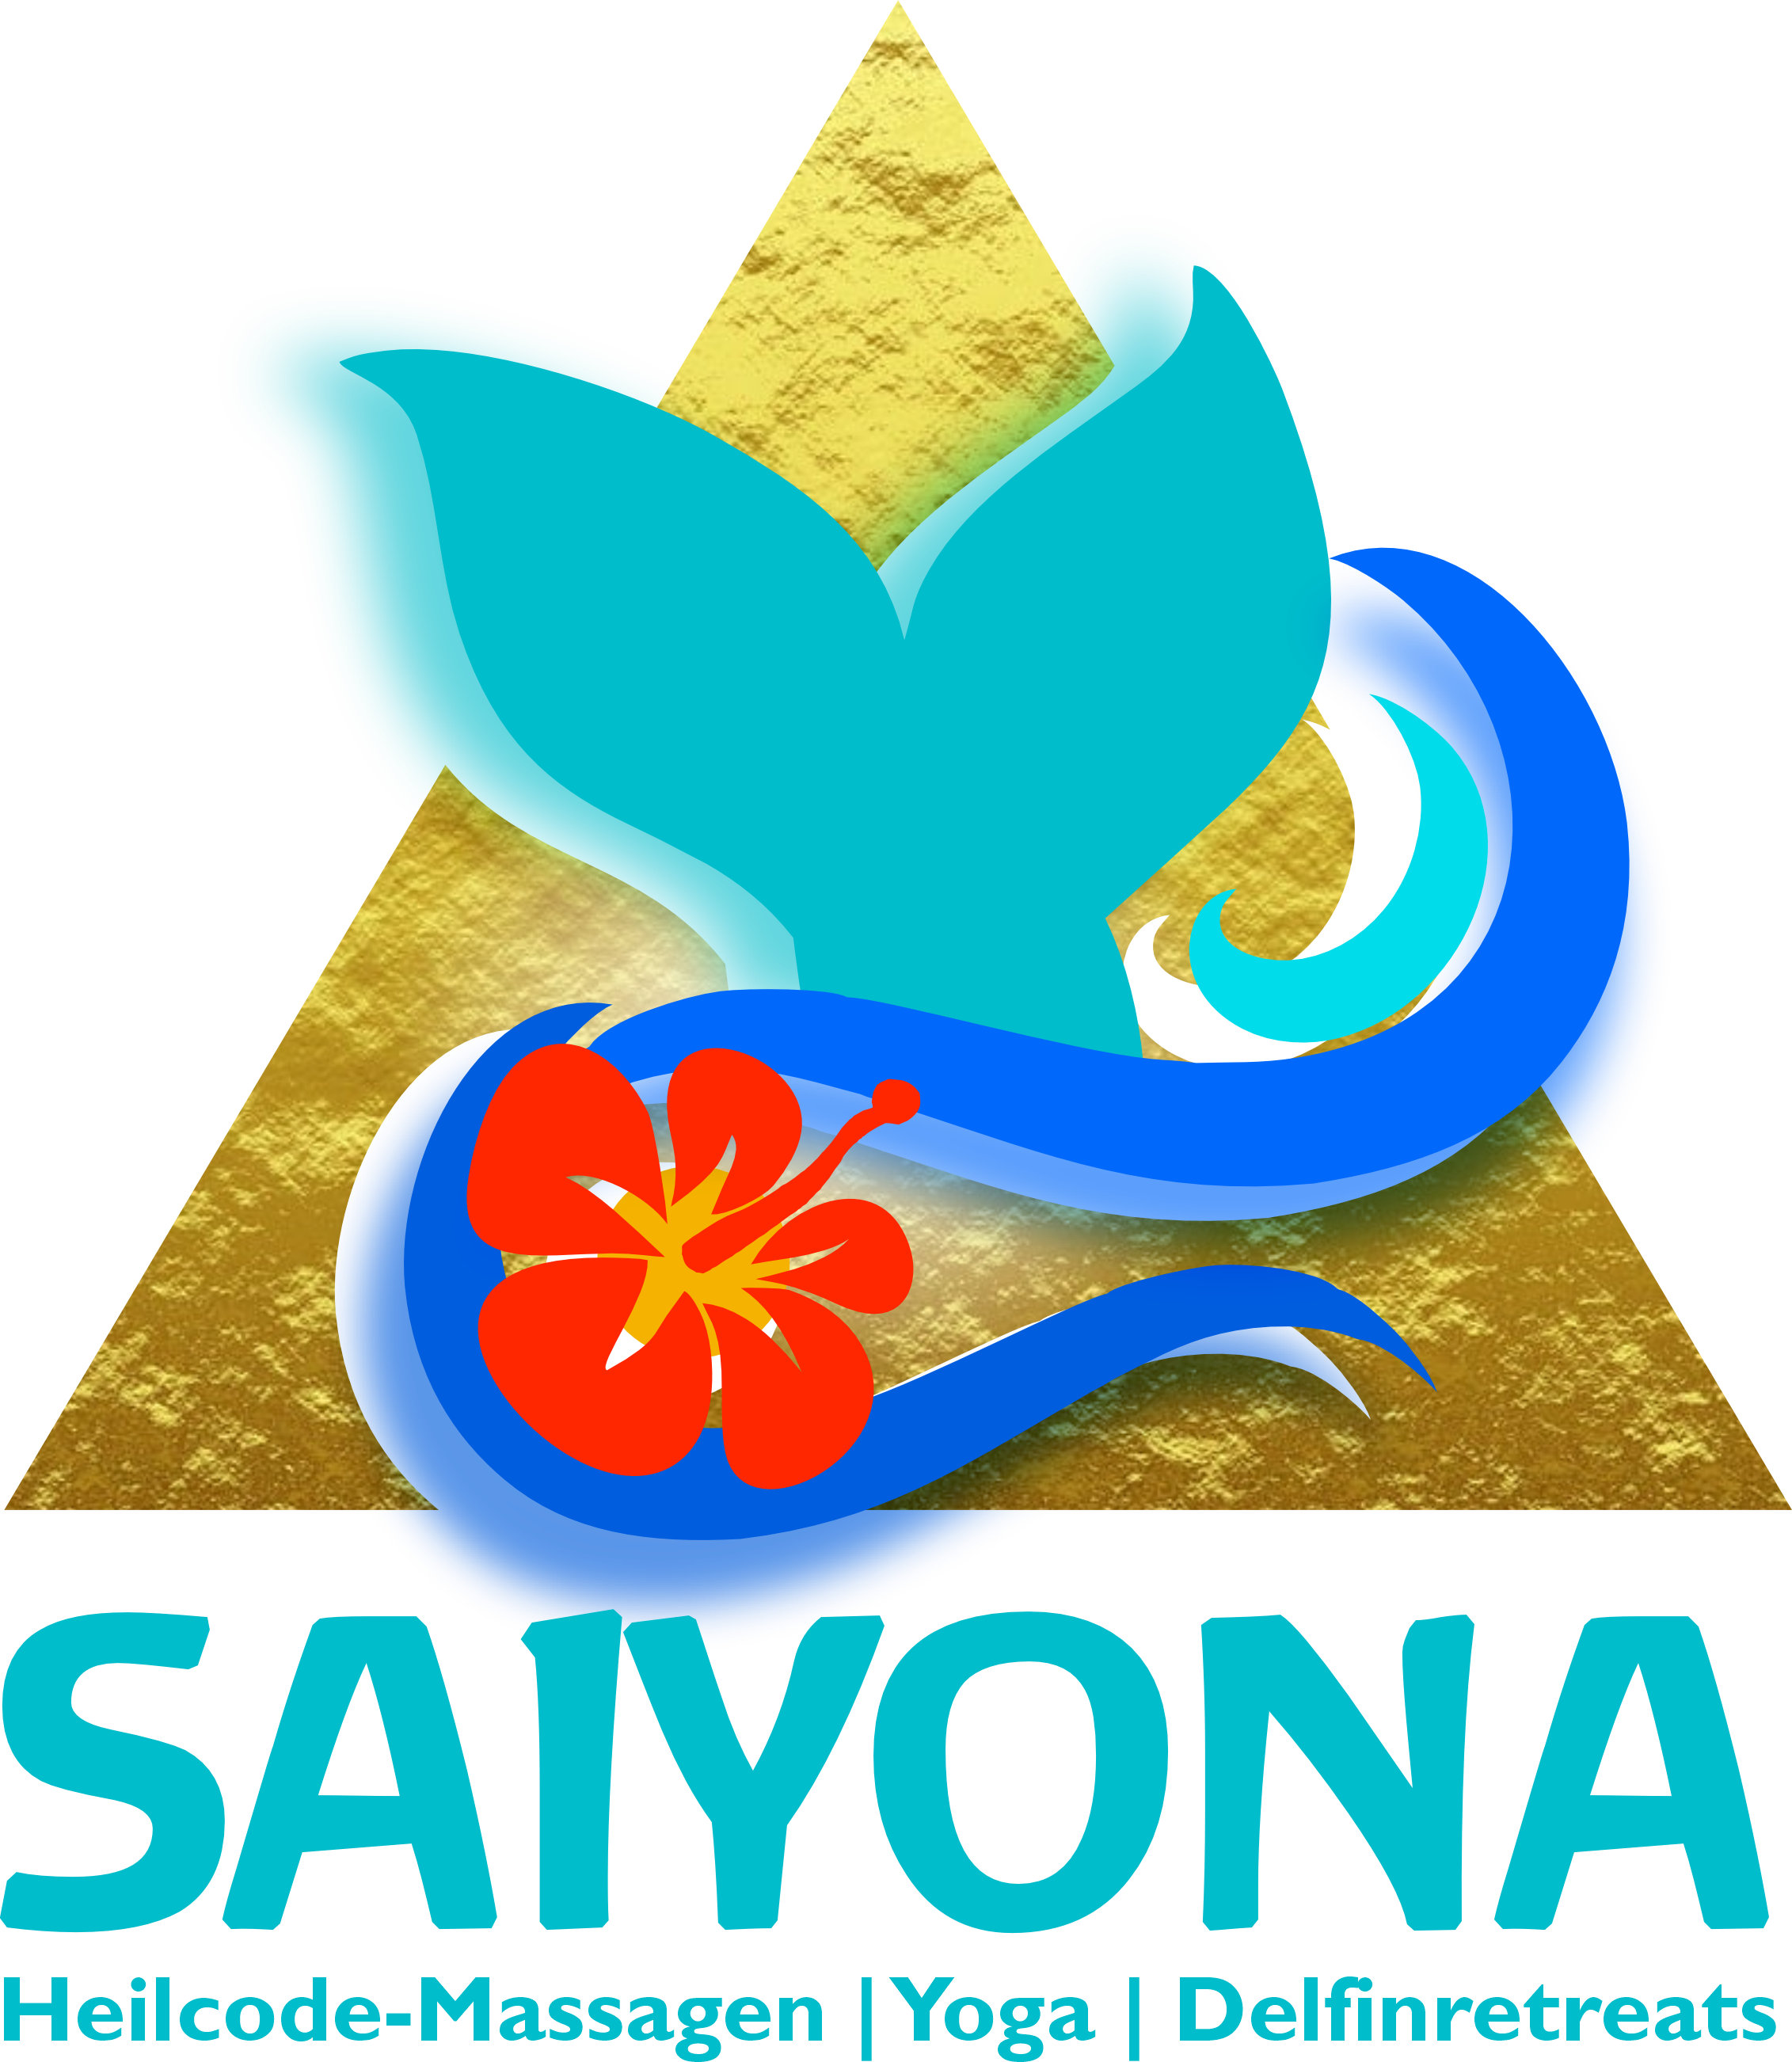 Saiyona Heilcode-Massagen